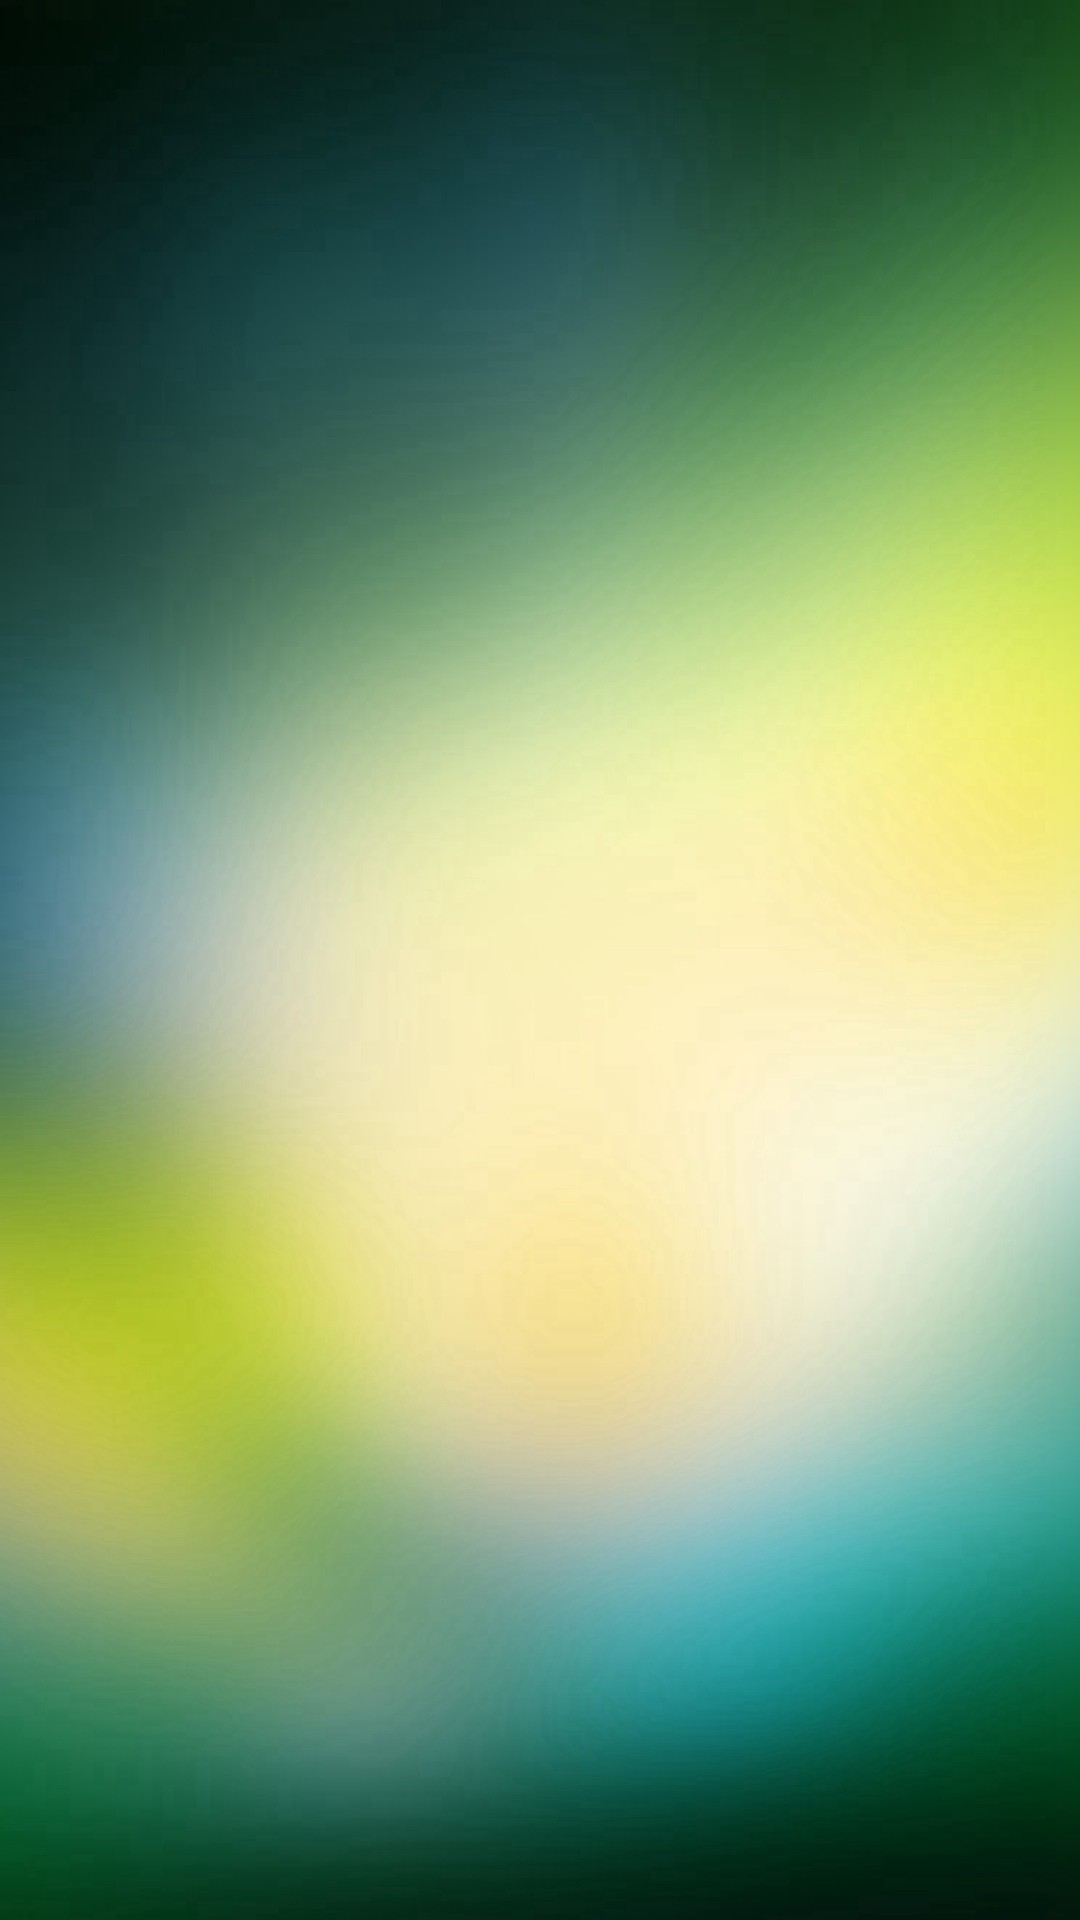 1080x1920 Green OS Background Gradation Blur #iPhone #6 #plus #wallpaper.  FarbkreisIphone 6 HintergrundbildWallpapers IpadProjekte ZeichnenIos HintergrÃ¼nde